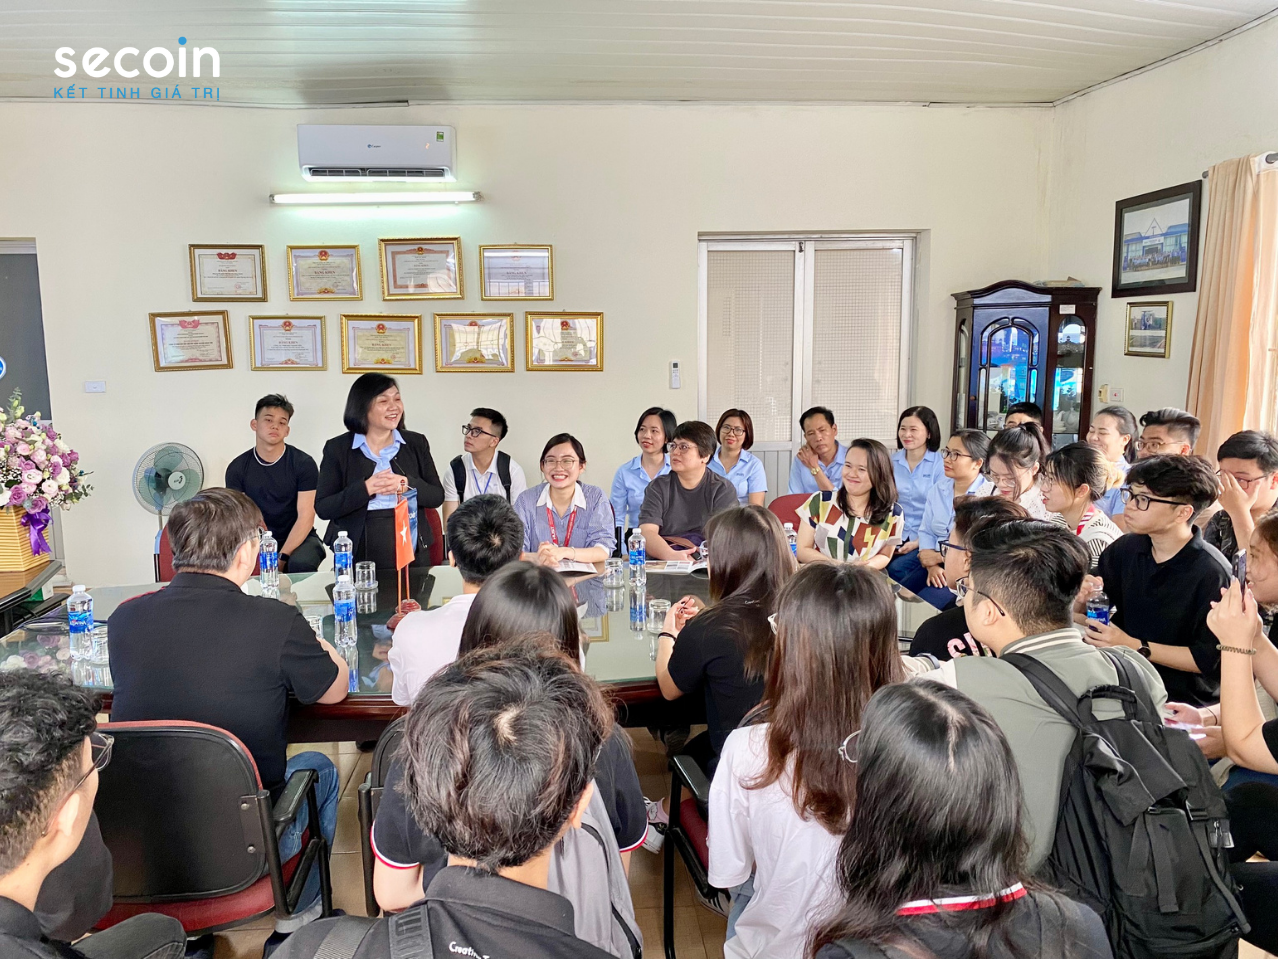 Cán bộ,sinh viên trường Temasek Polytechnic (Singapore) và Đại học Bách khoa Hà Nội tham quan nhà máy Secoin Hưng Yên